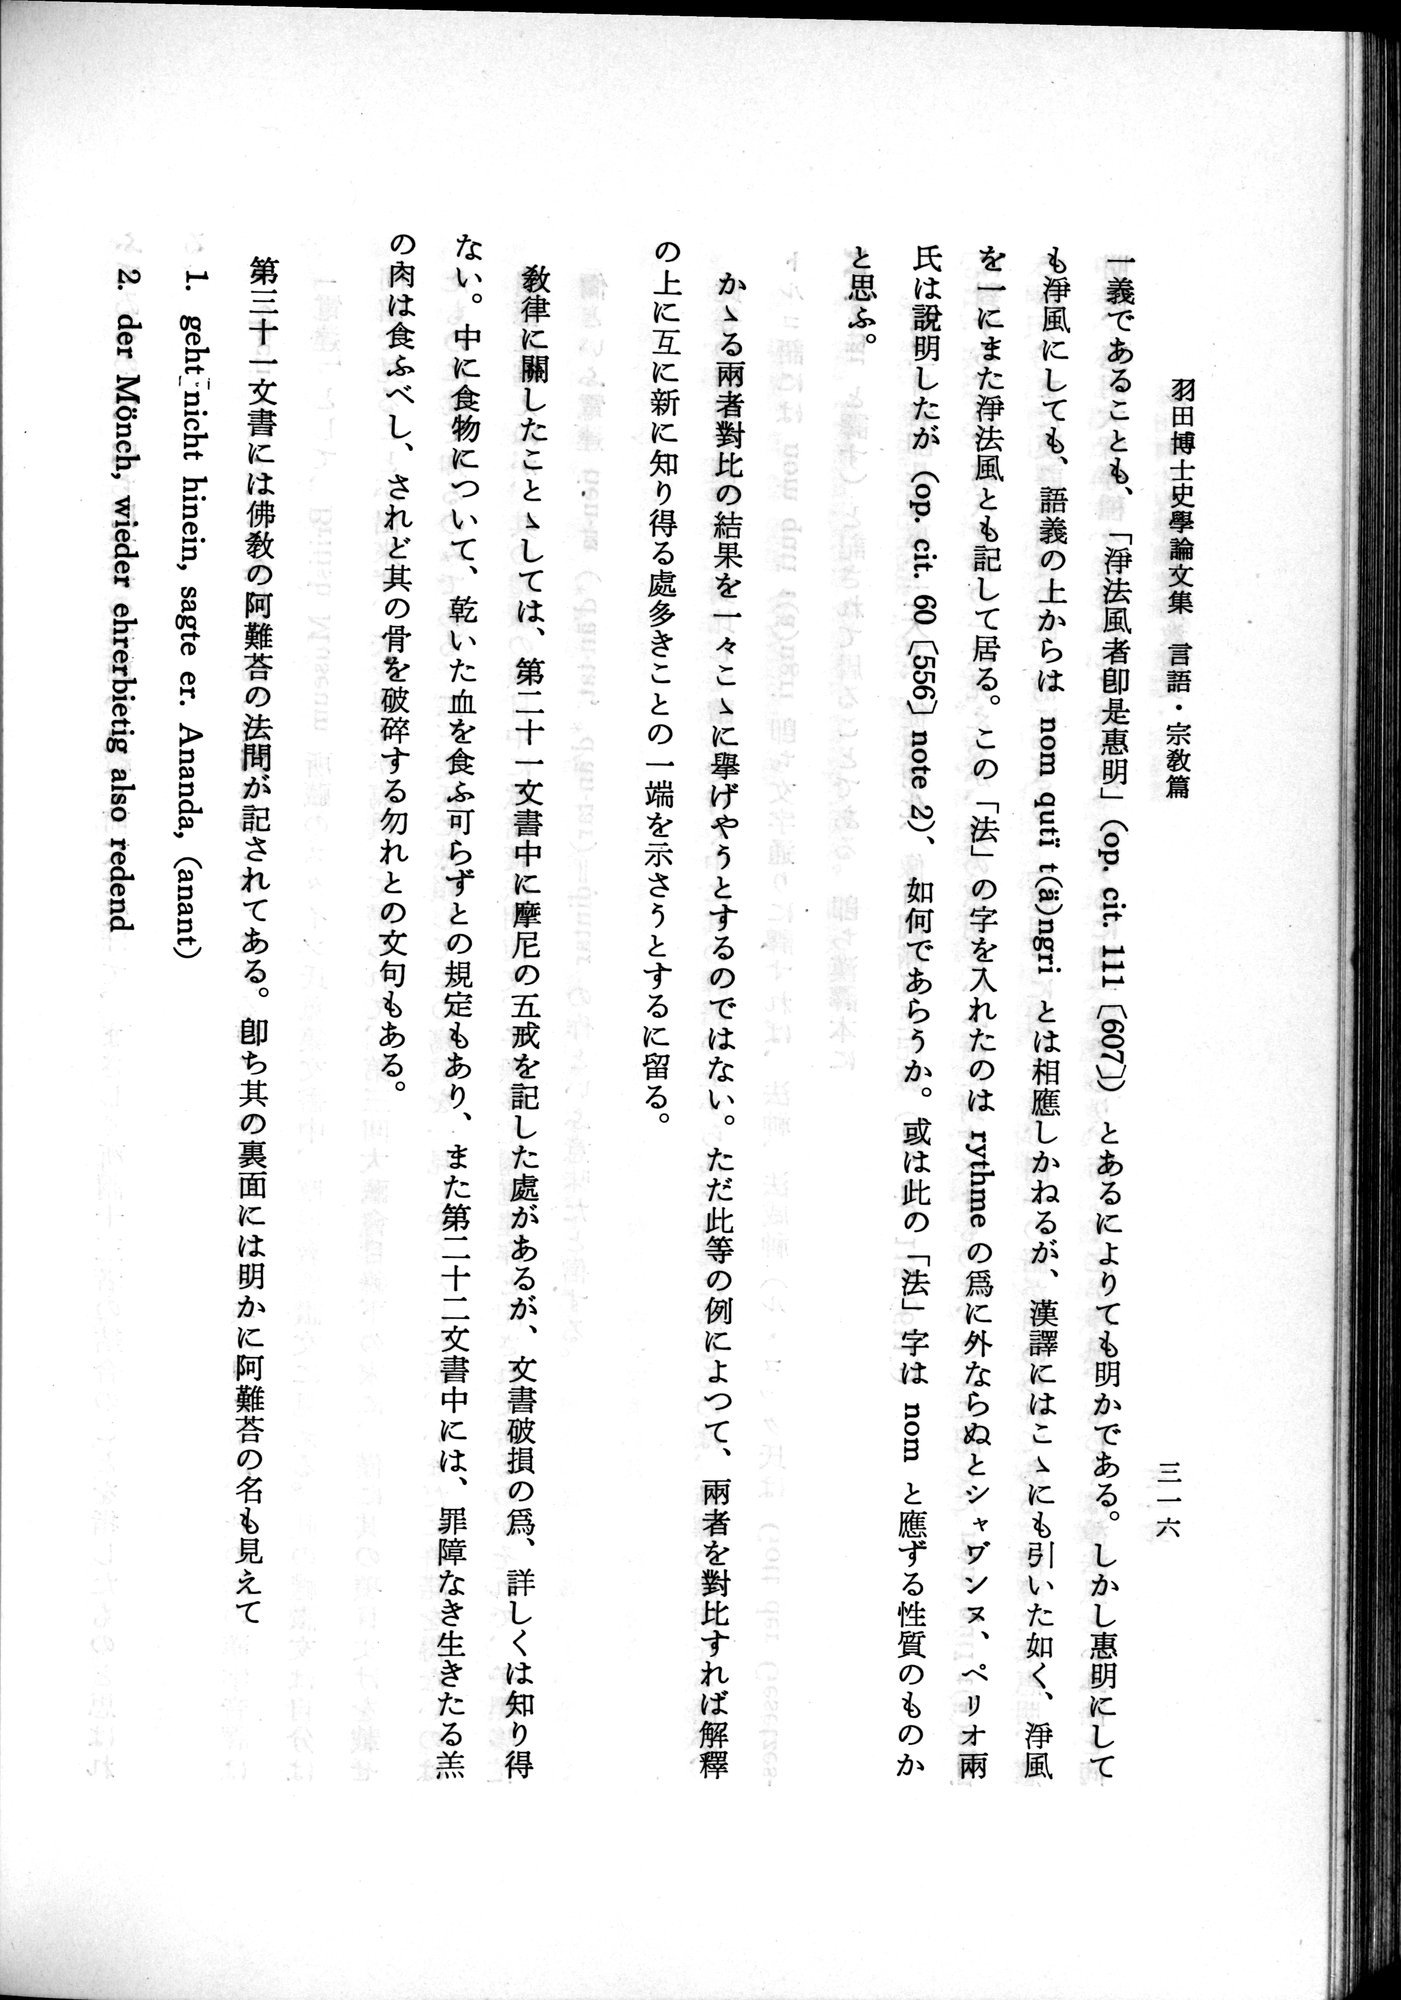 羽田博士史学論文集 : vol.2 / Page 378 (Grayscale High Resolution Image)